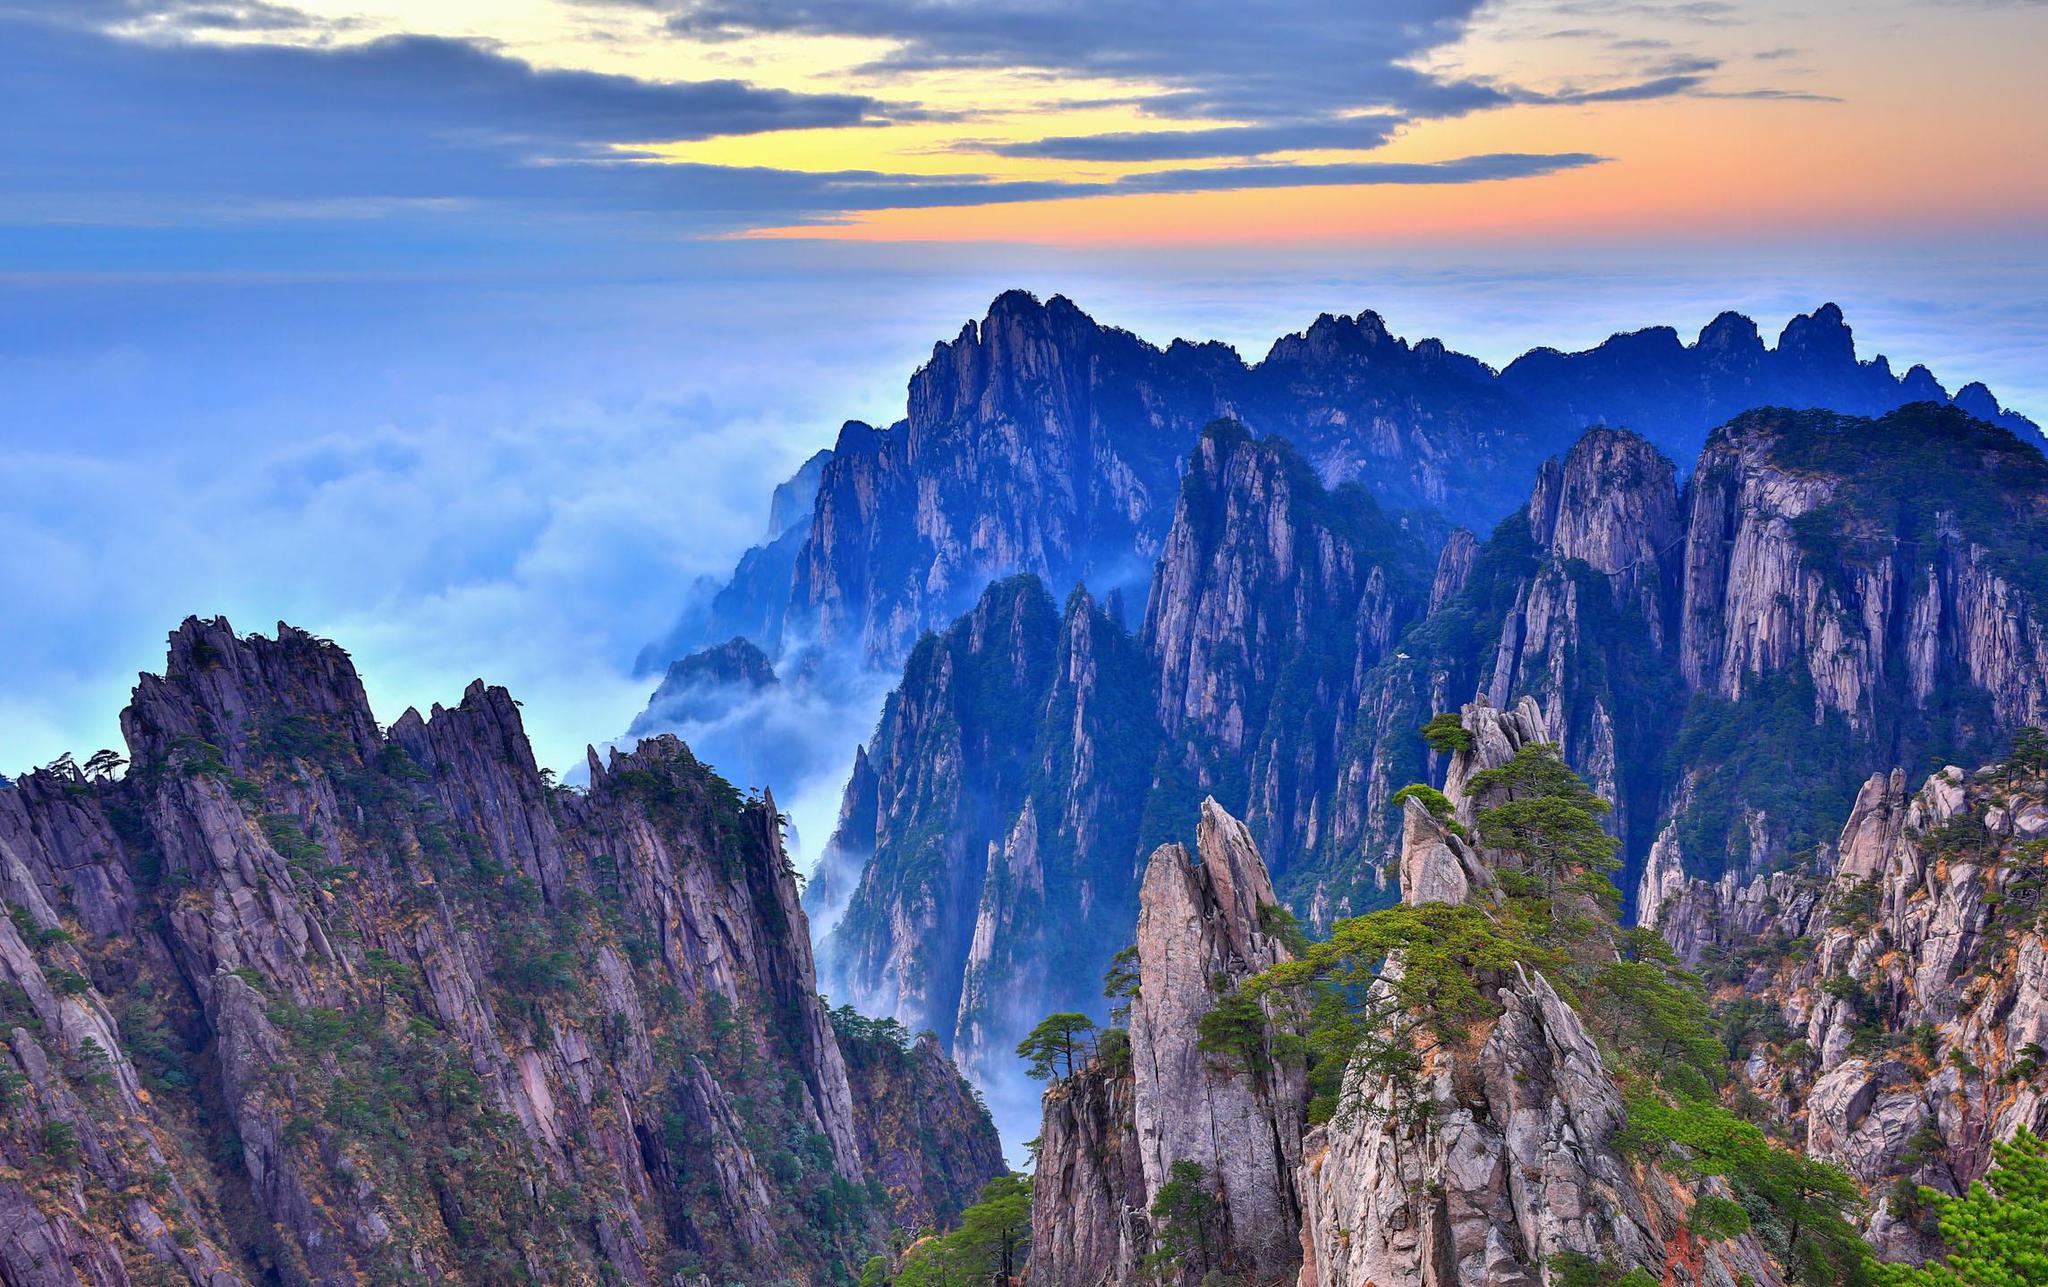 黄山,位于安徽省南部,因其别具一格的奇松,怪石,云海和温泉而被誉为